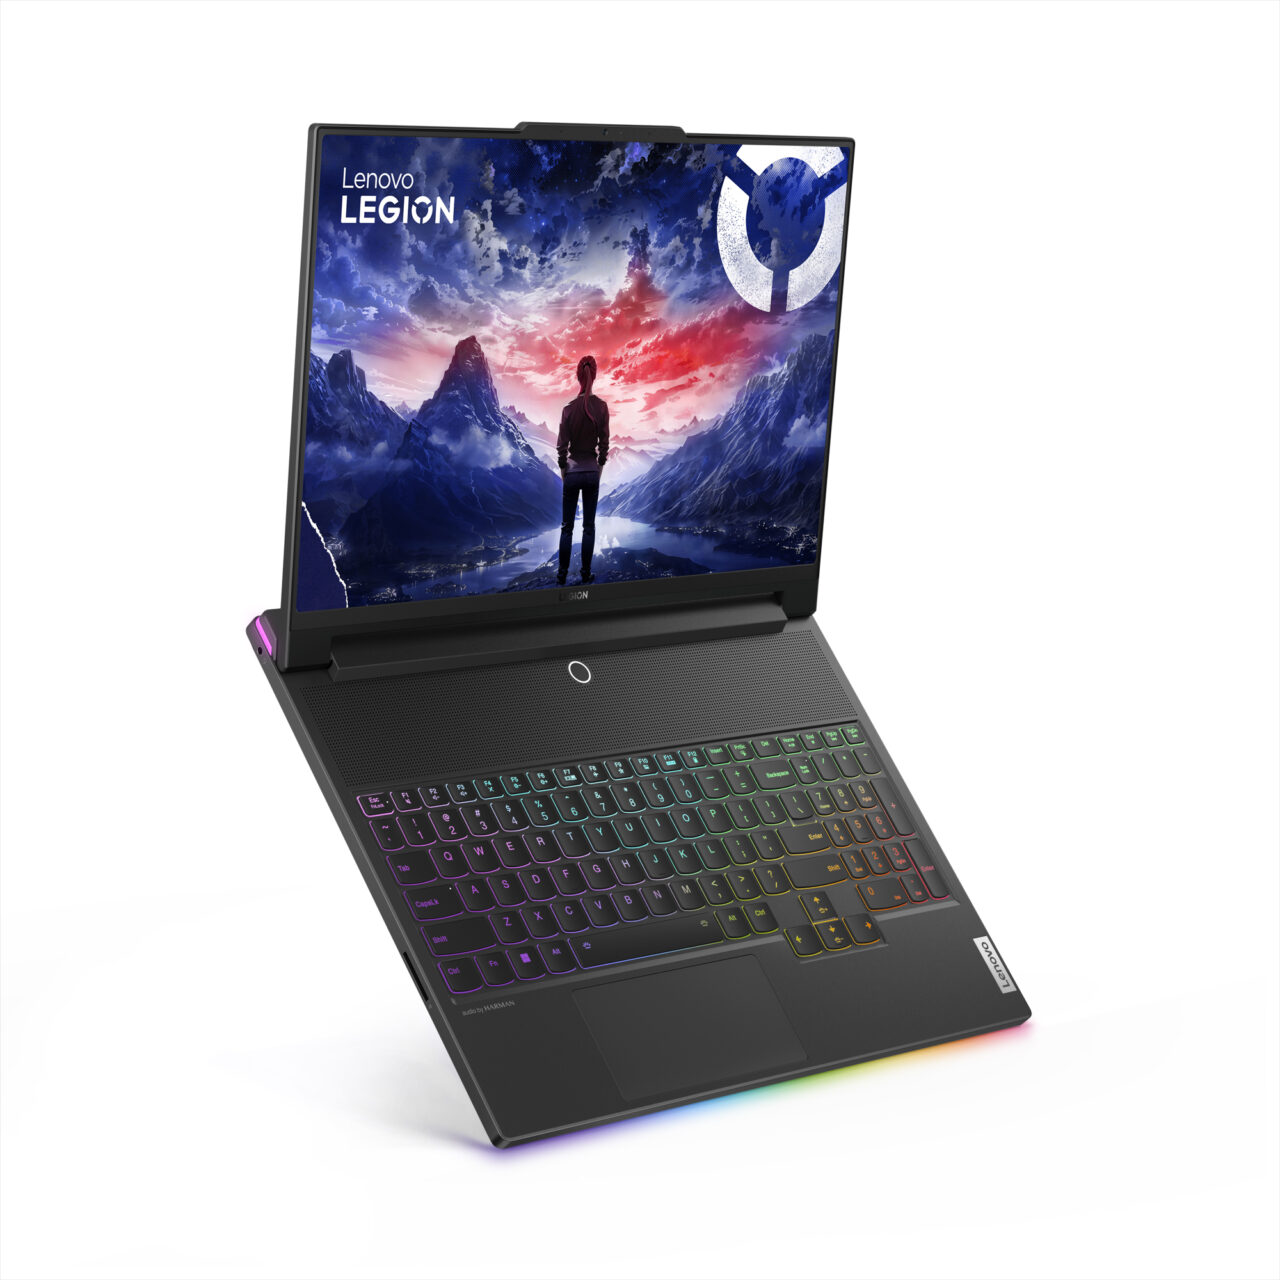 Laptop gamingowy Lenovo Legion otwarty z klawiaturą podświetlaną RGB na pierwszym planie oraz tapetą z postacią ludzką stojącą na tle górskiego krajobrazu i kosmicznego nieba na ekranie.